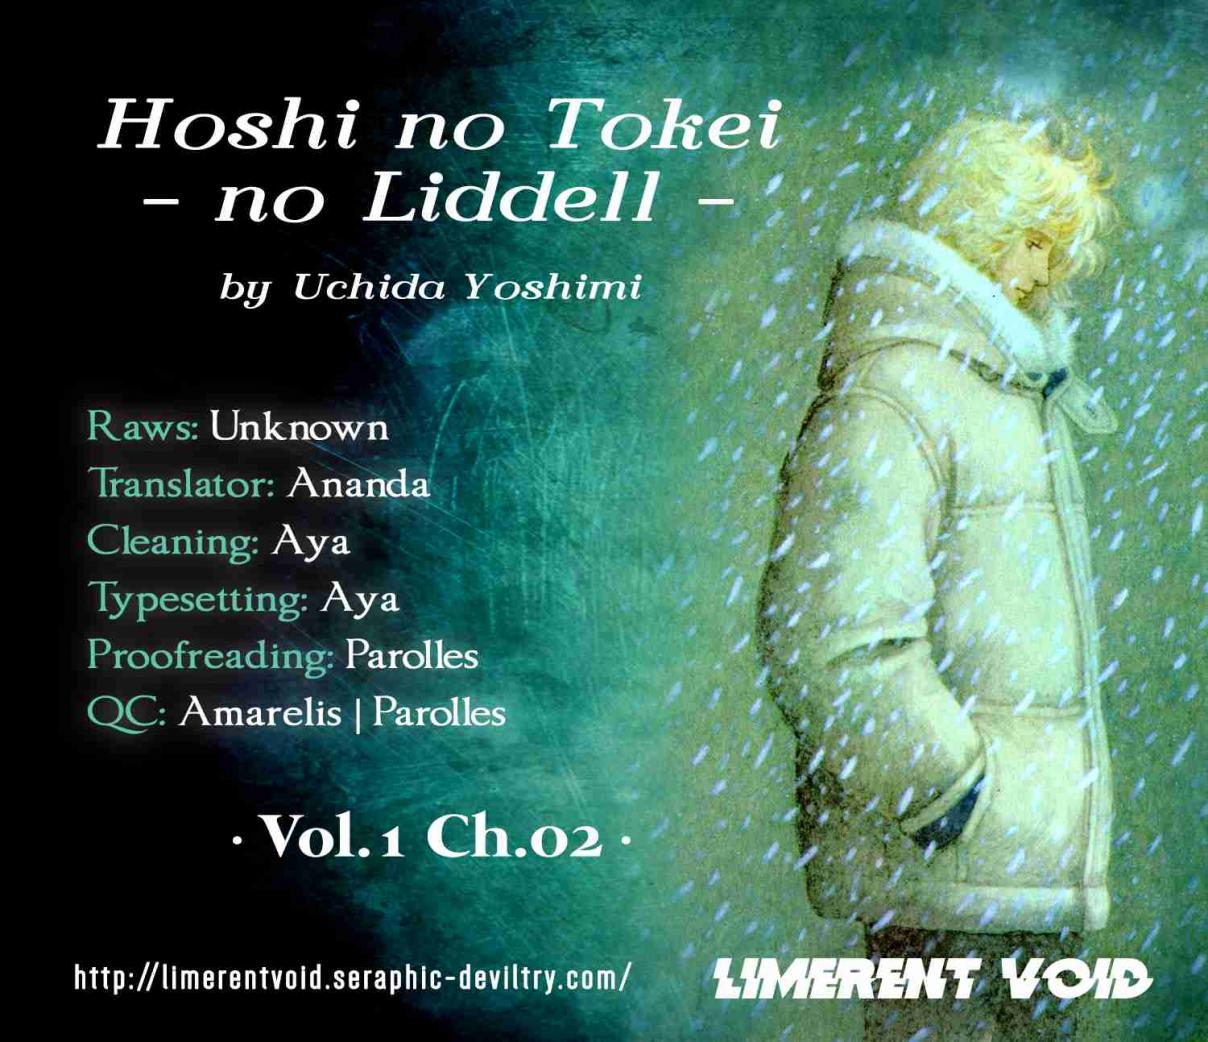 Hoshi no Tokei no Liddell Vol. 1 Ch. 2